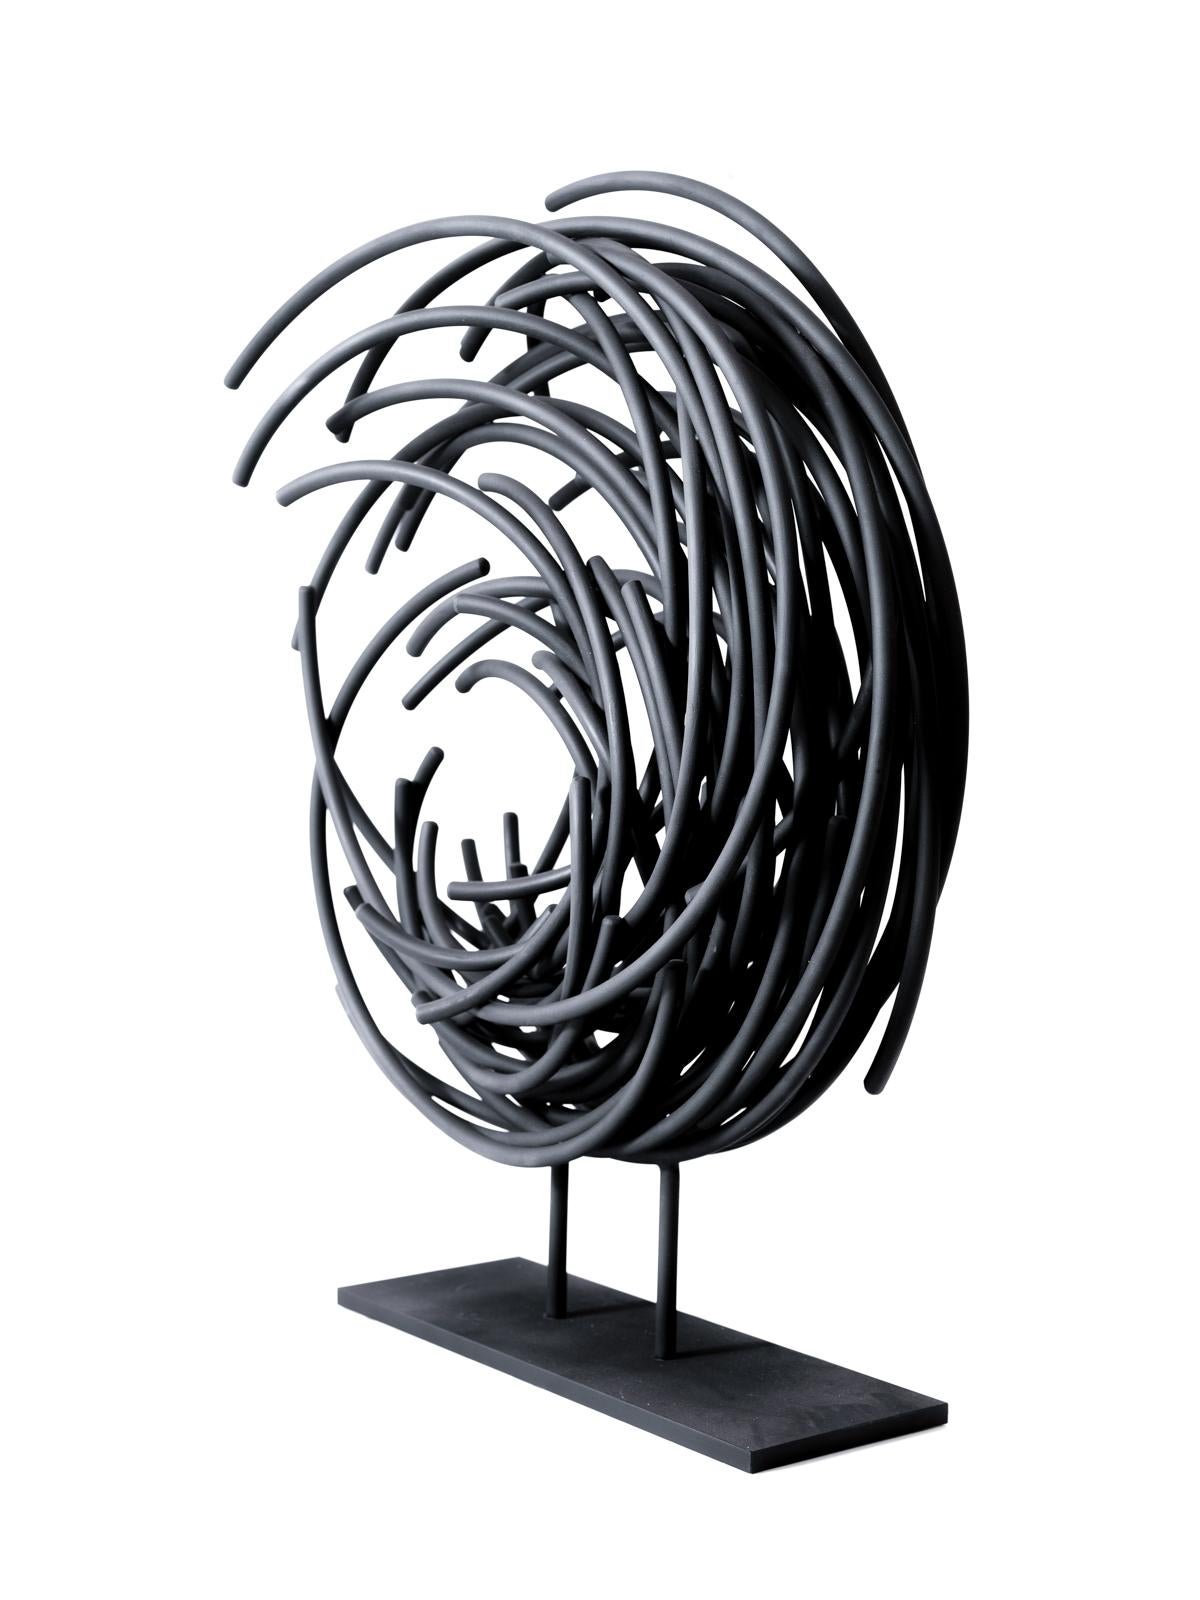 Diese dynamische Skulptur von Shayne Dark in mattem Schwarz ist Teil einer aufregenden neuen Serie namens Maelstrom. Bekannt für seine einzigartig schönen abstrakten Arbeiten, ist dieses Stück handgeschmiedet aus kleinen runden Aluminiumstäben, die